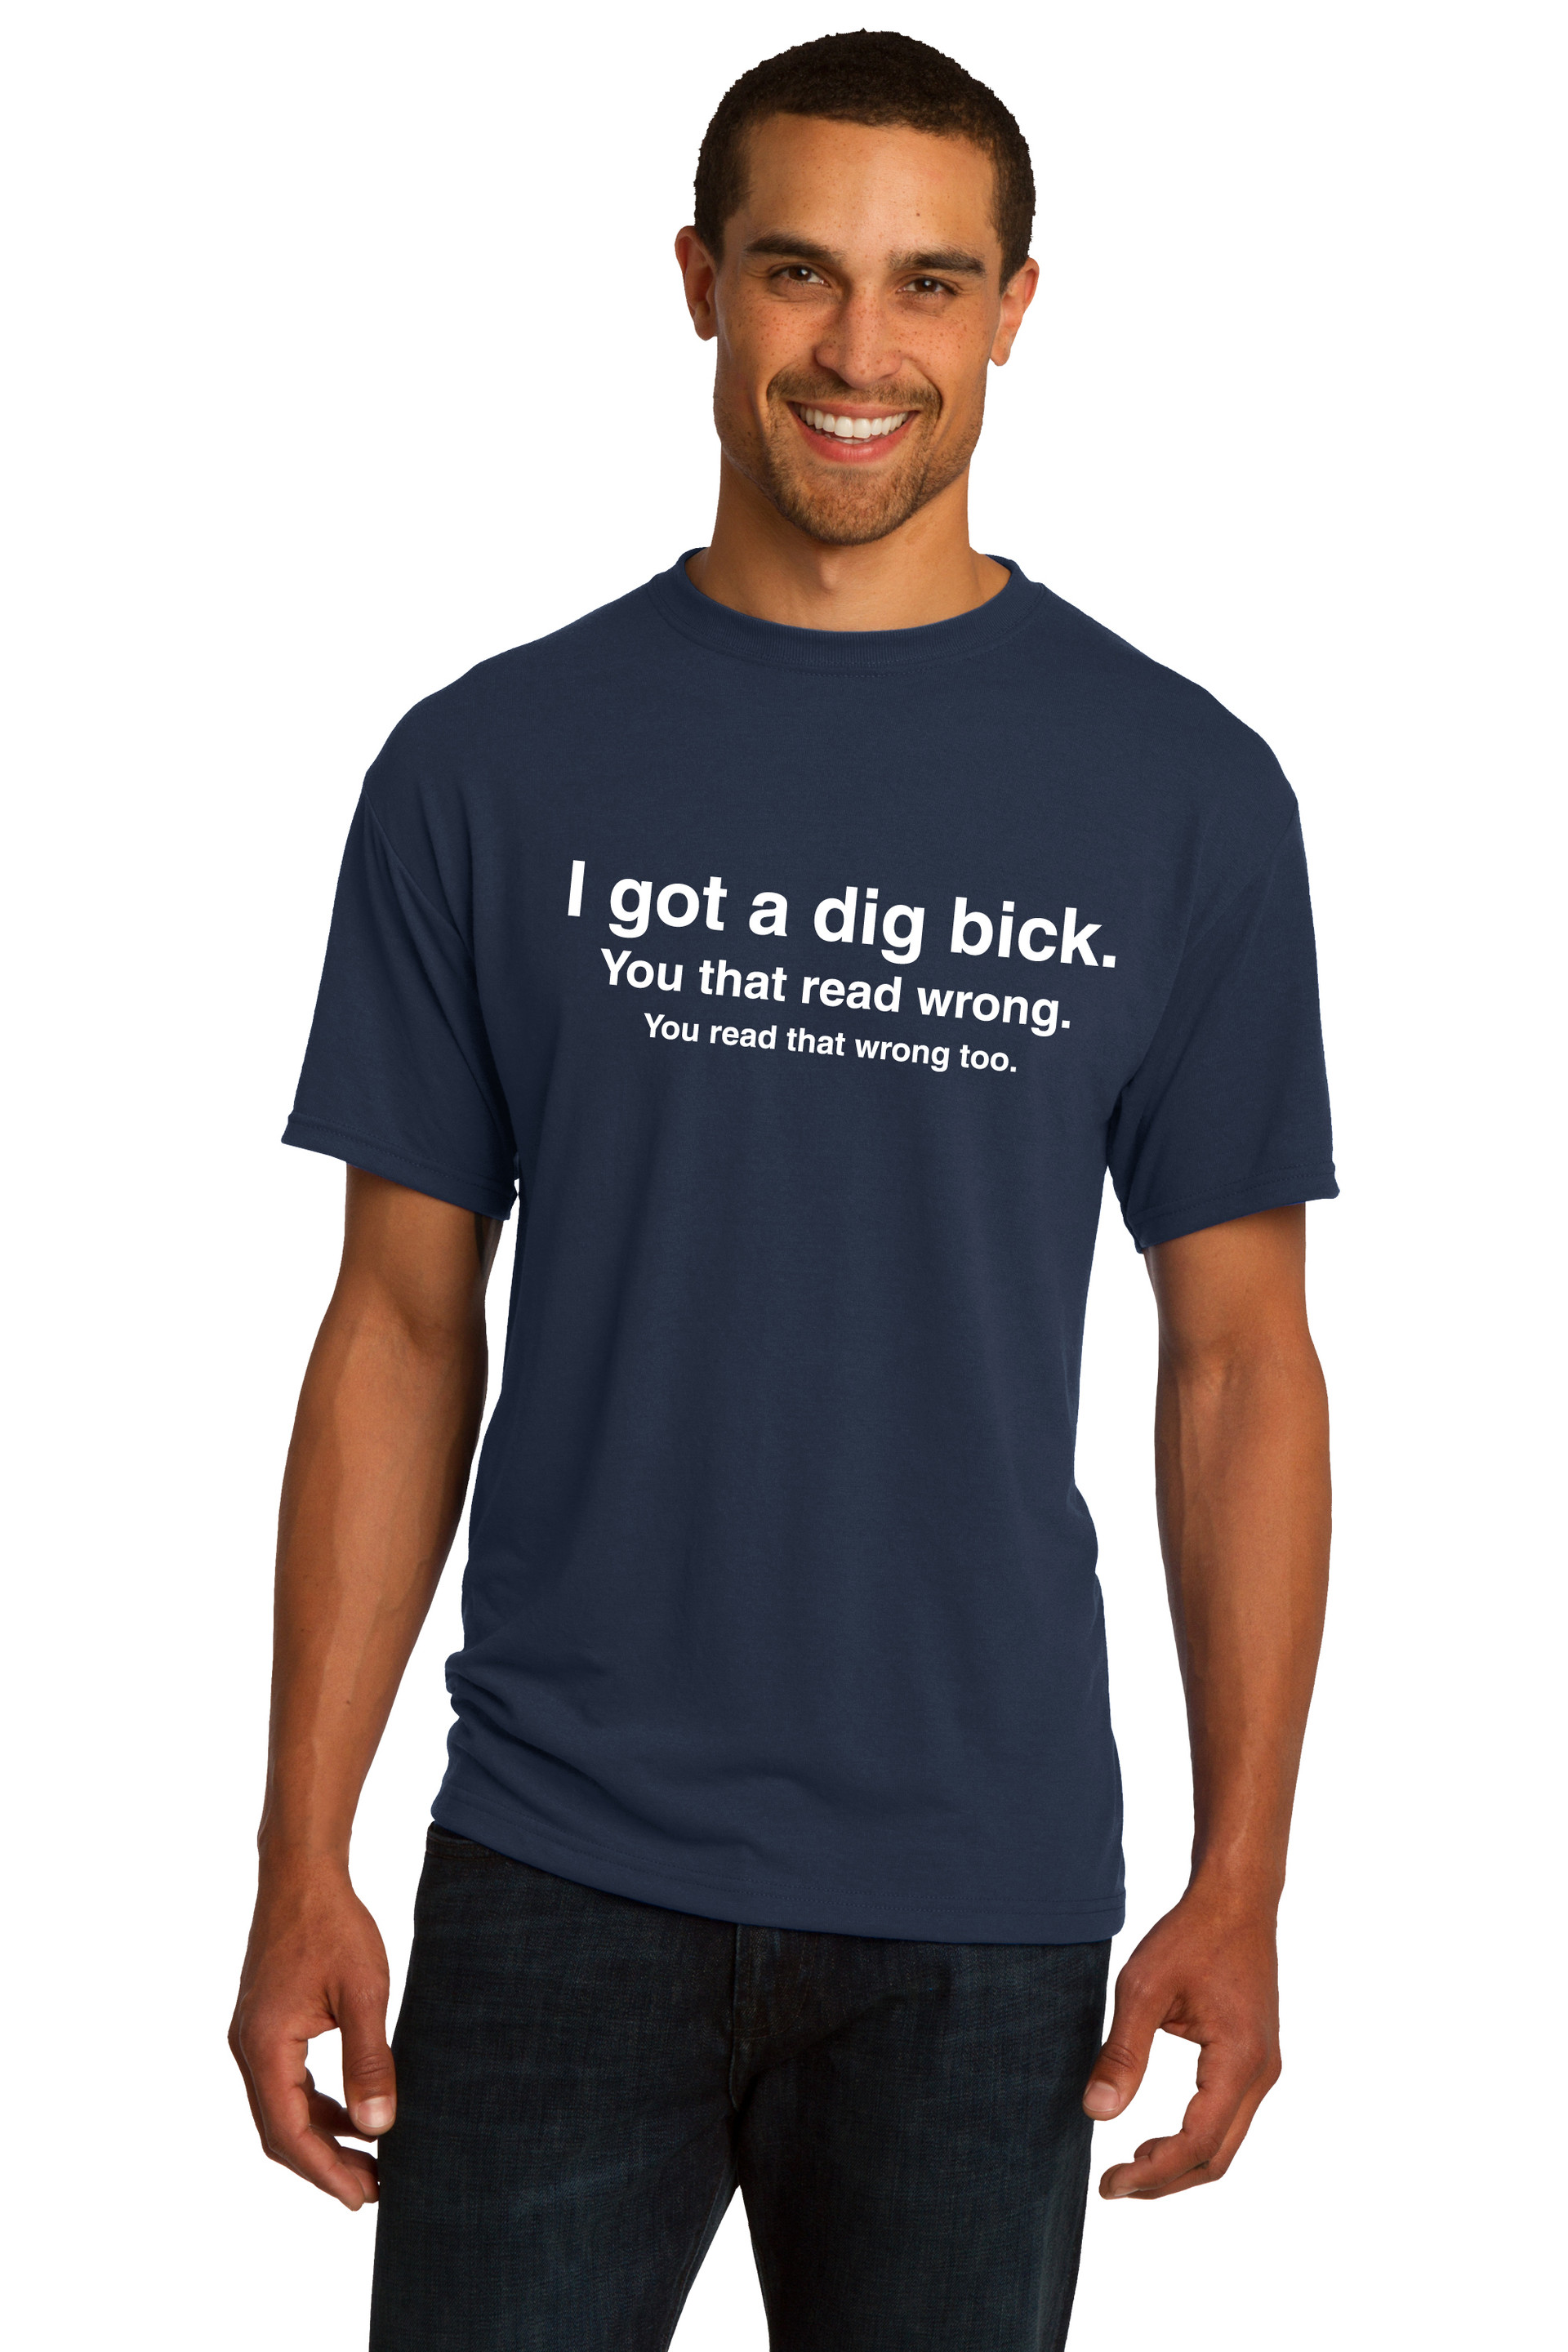 I Got a Dig Bick (Big Dick) T-Shirt - Funny ADULT Rude Humor Offensive ...